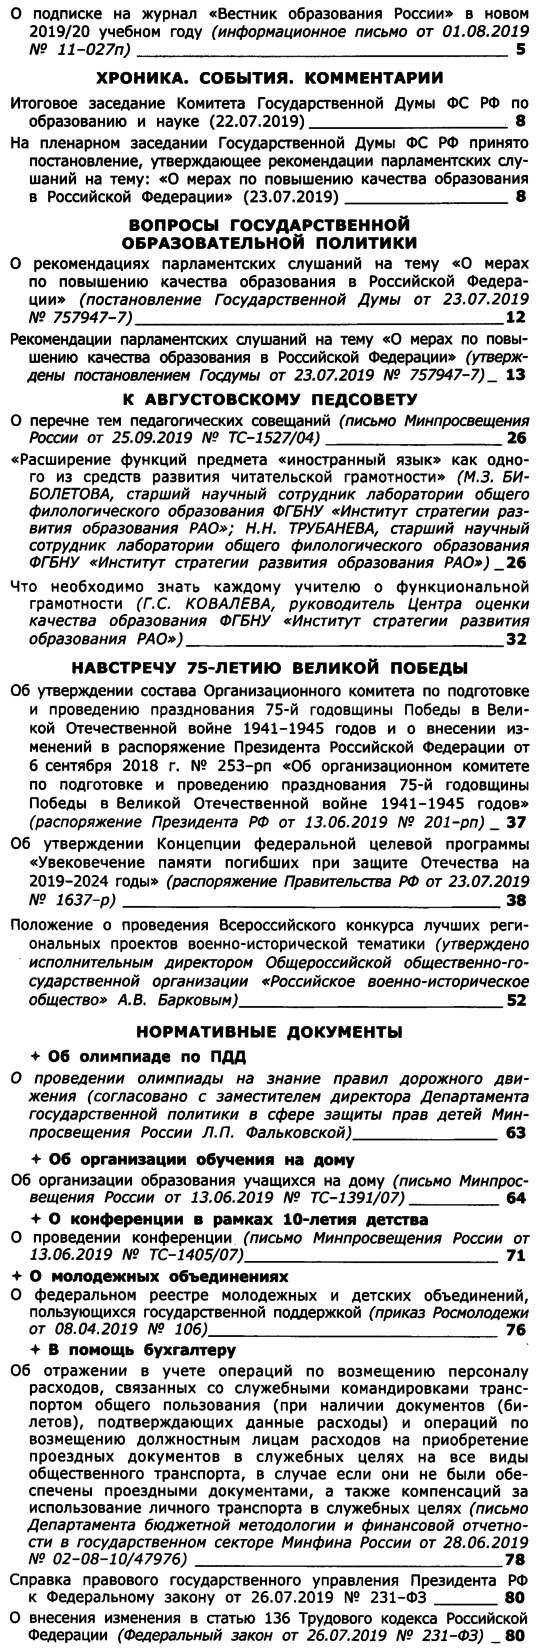 Вестник образования России 2019-16.png